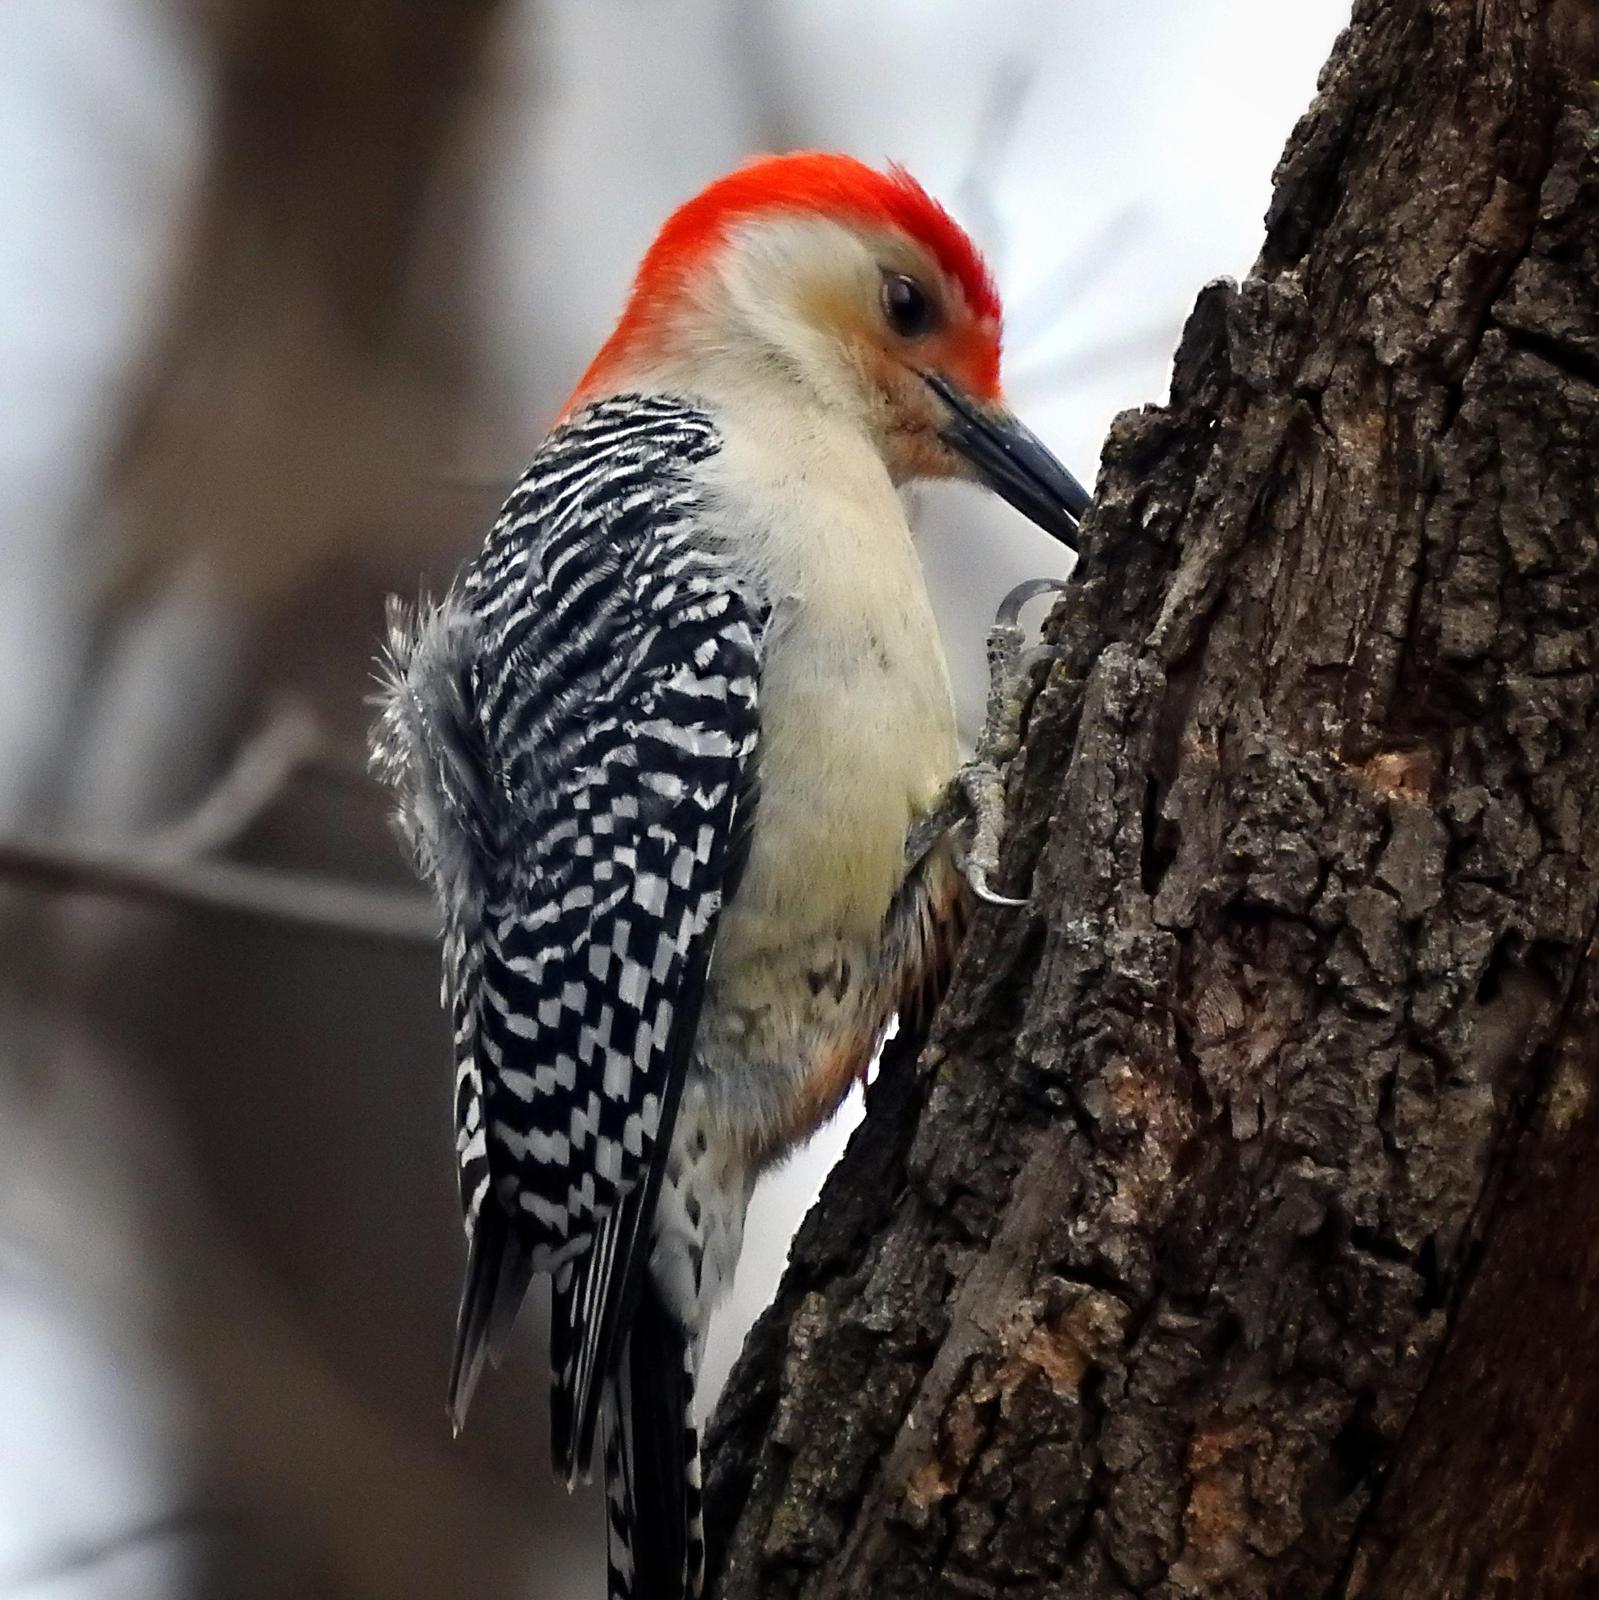 Red-bellied Woodpecker Photo by Steven Kleiman